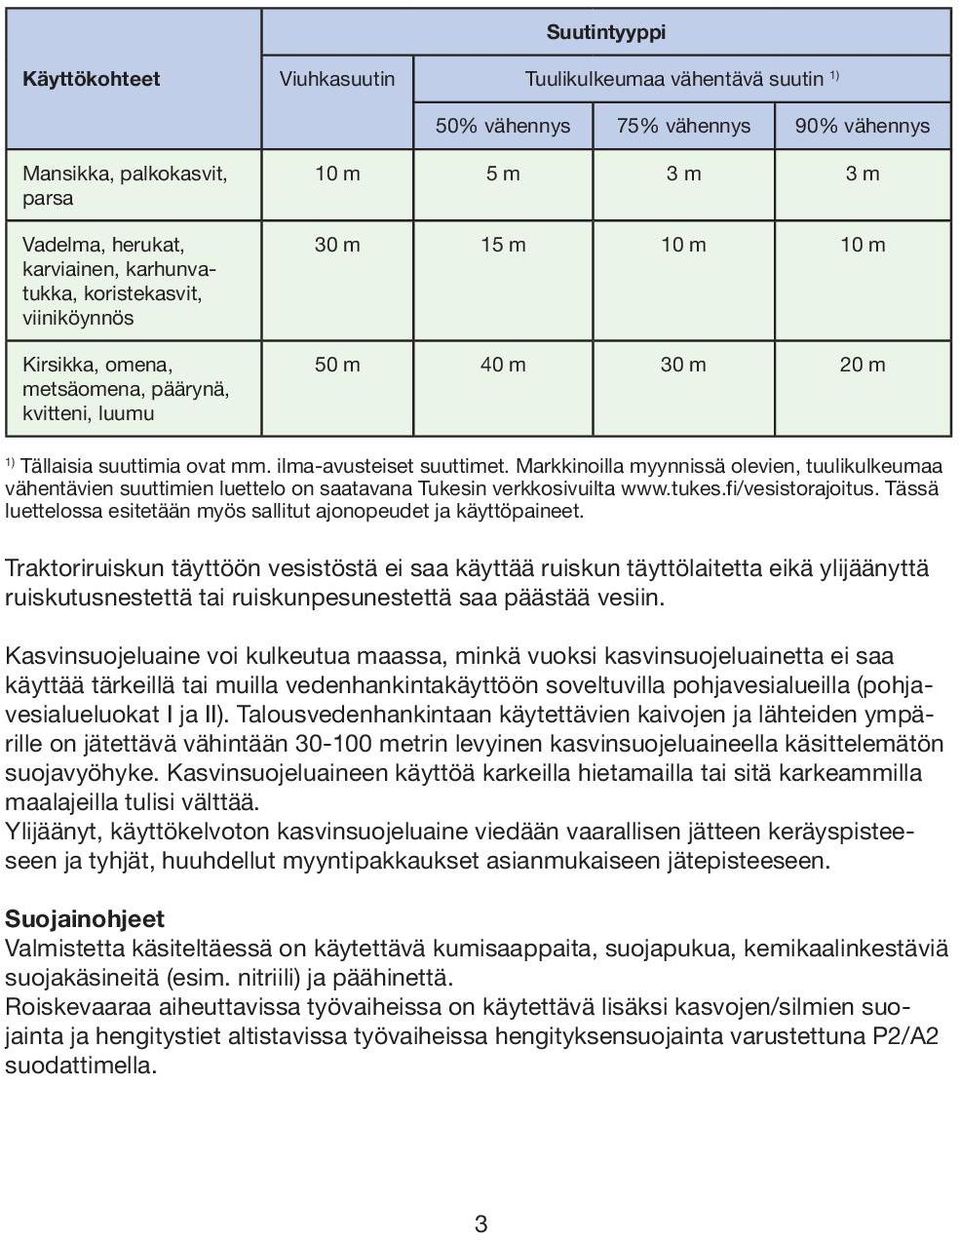 Markkinoilla myynnissä olevien, tuulikulkeumaa vähentävien suuttimien luettelo on saatavana Tukesin verkkosivuilta www.tukes.fi/vesistorajoitus.